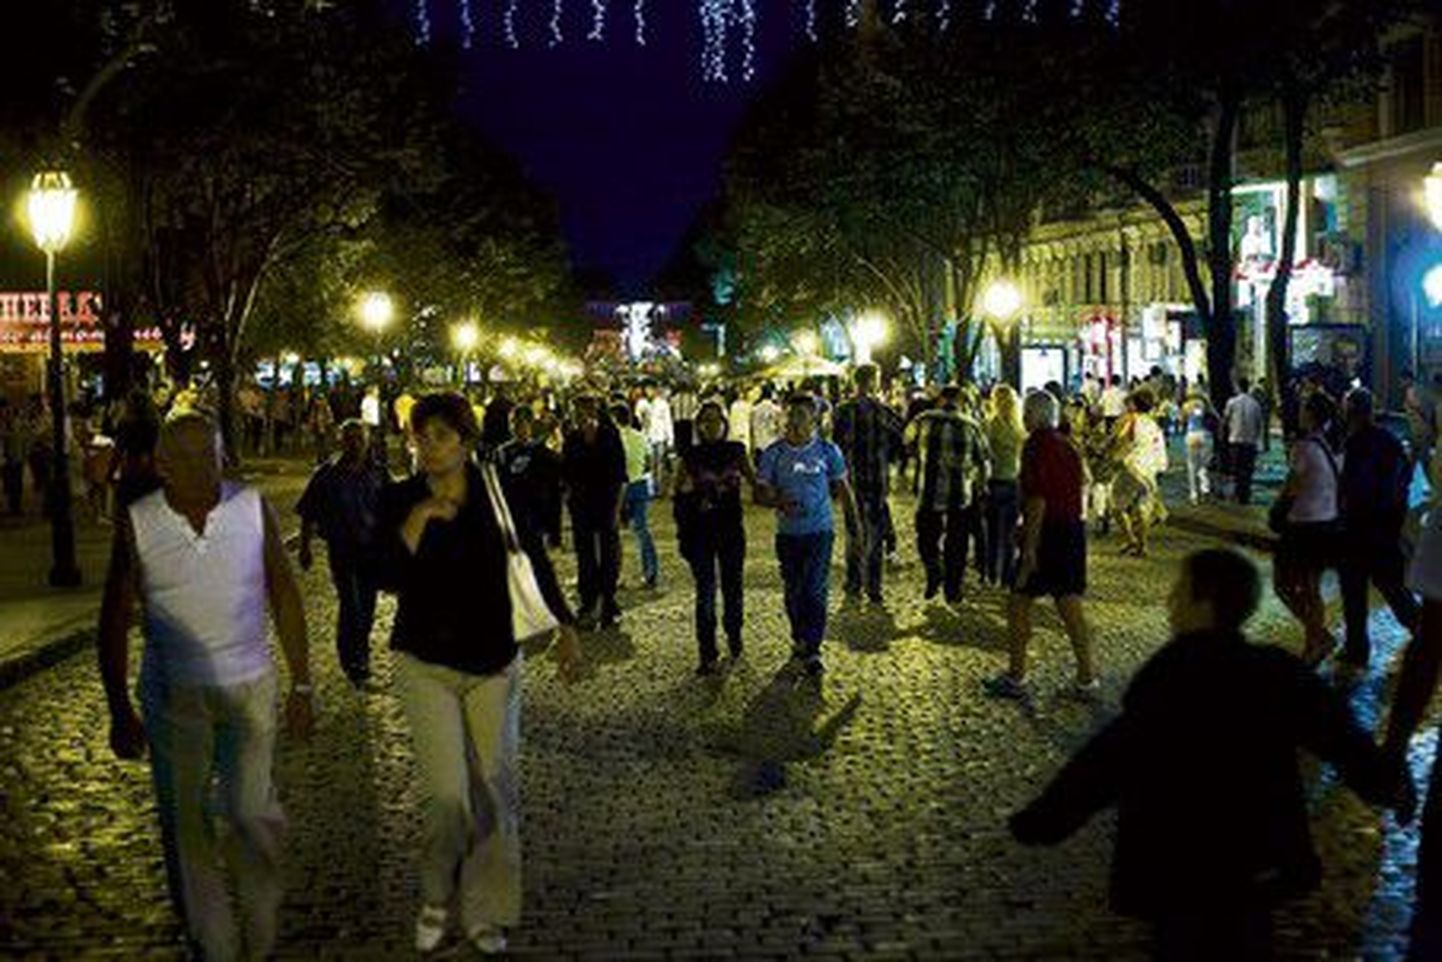 See on vaade õhtusele Odessale päeval, kui linna 214. aastapäeva tähistati. Rahvast liikus linnas pidevalt, enamasti oldi teel mere poole, kus suur kontsert kavas oli.